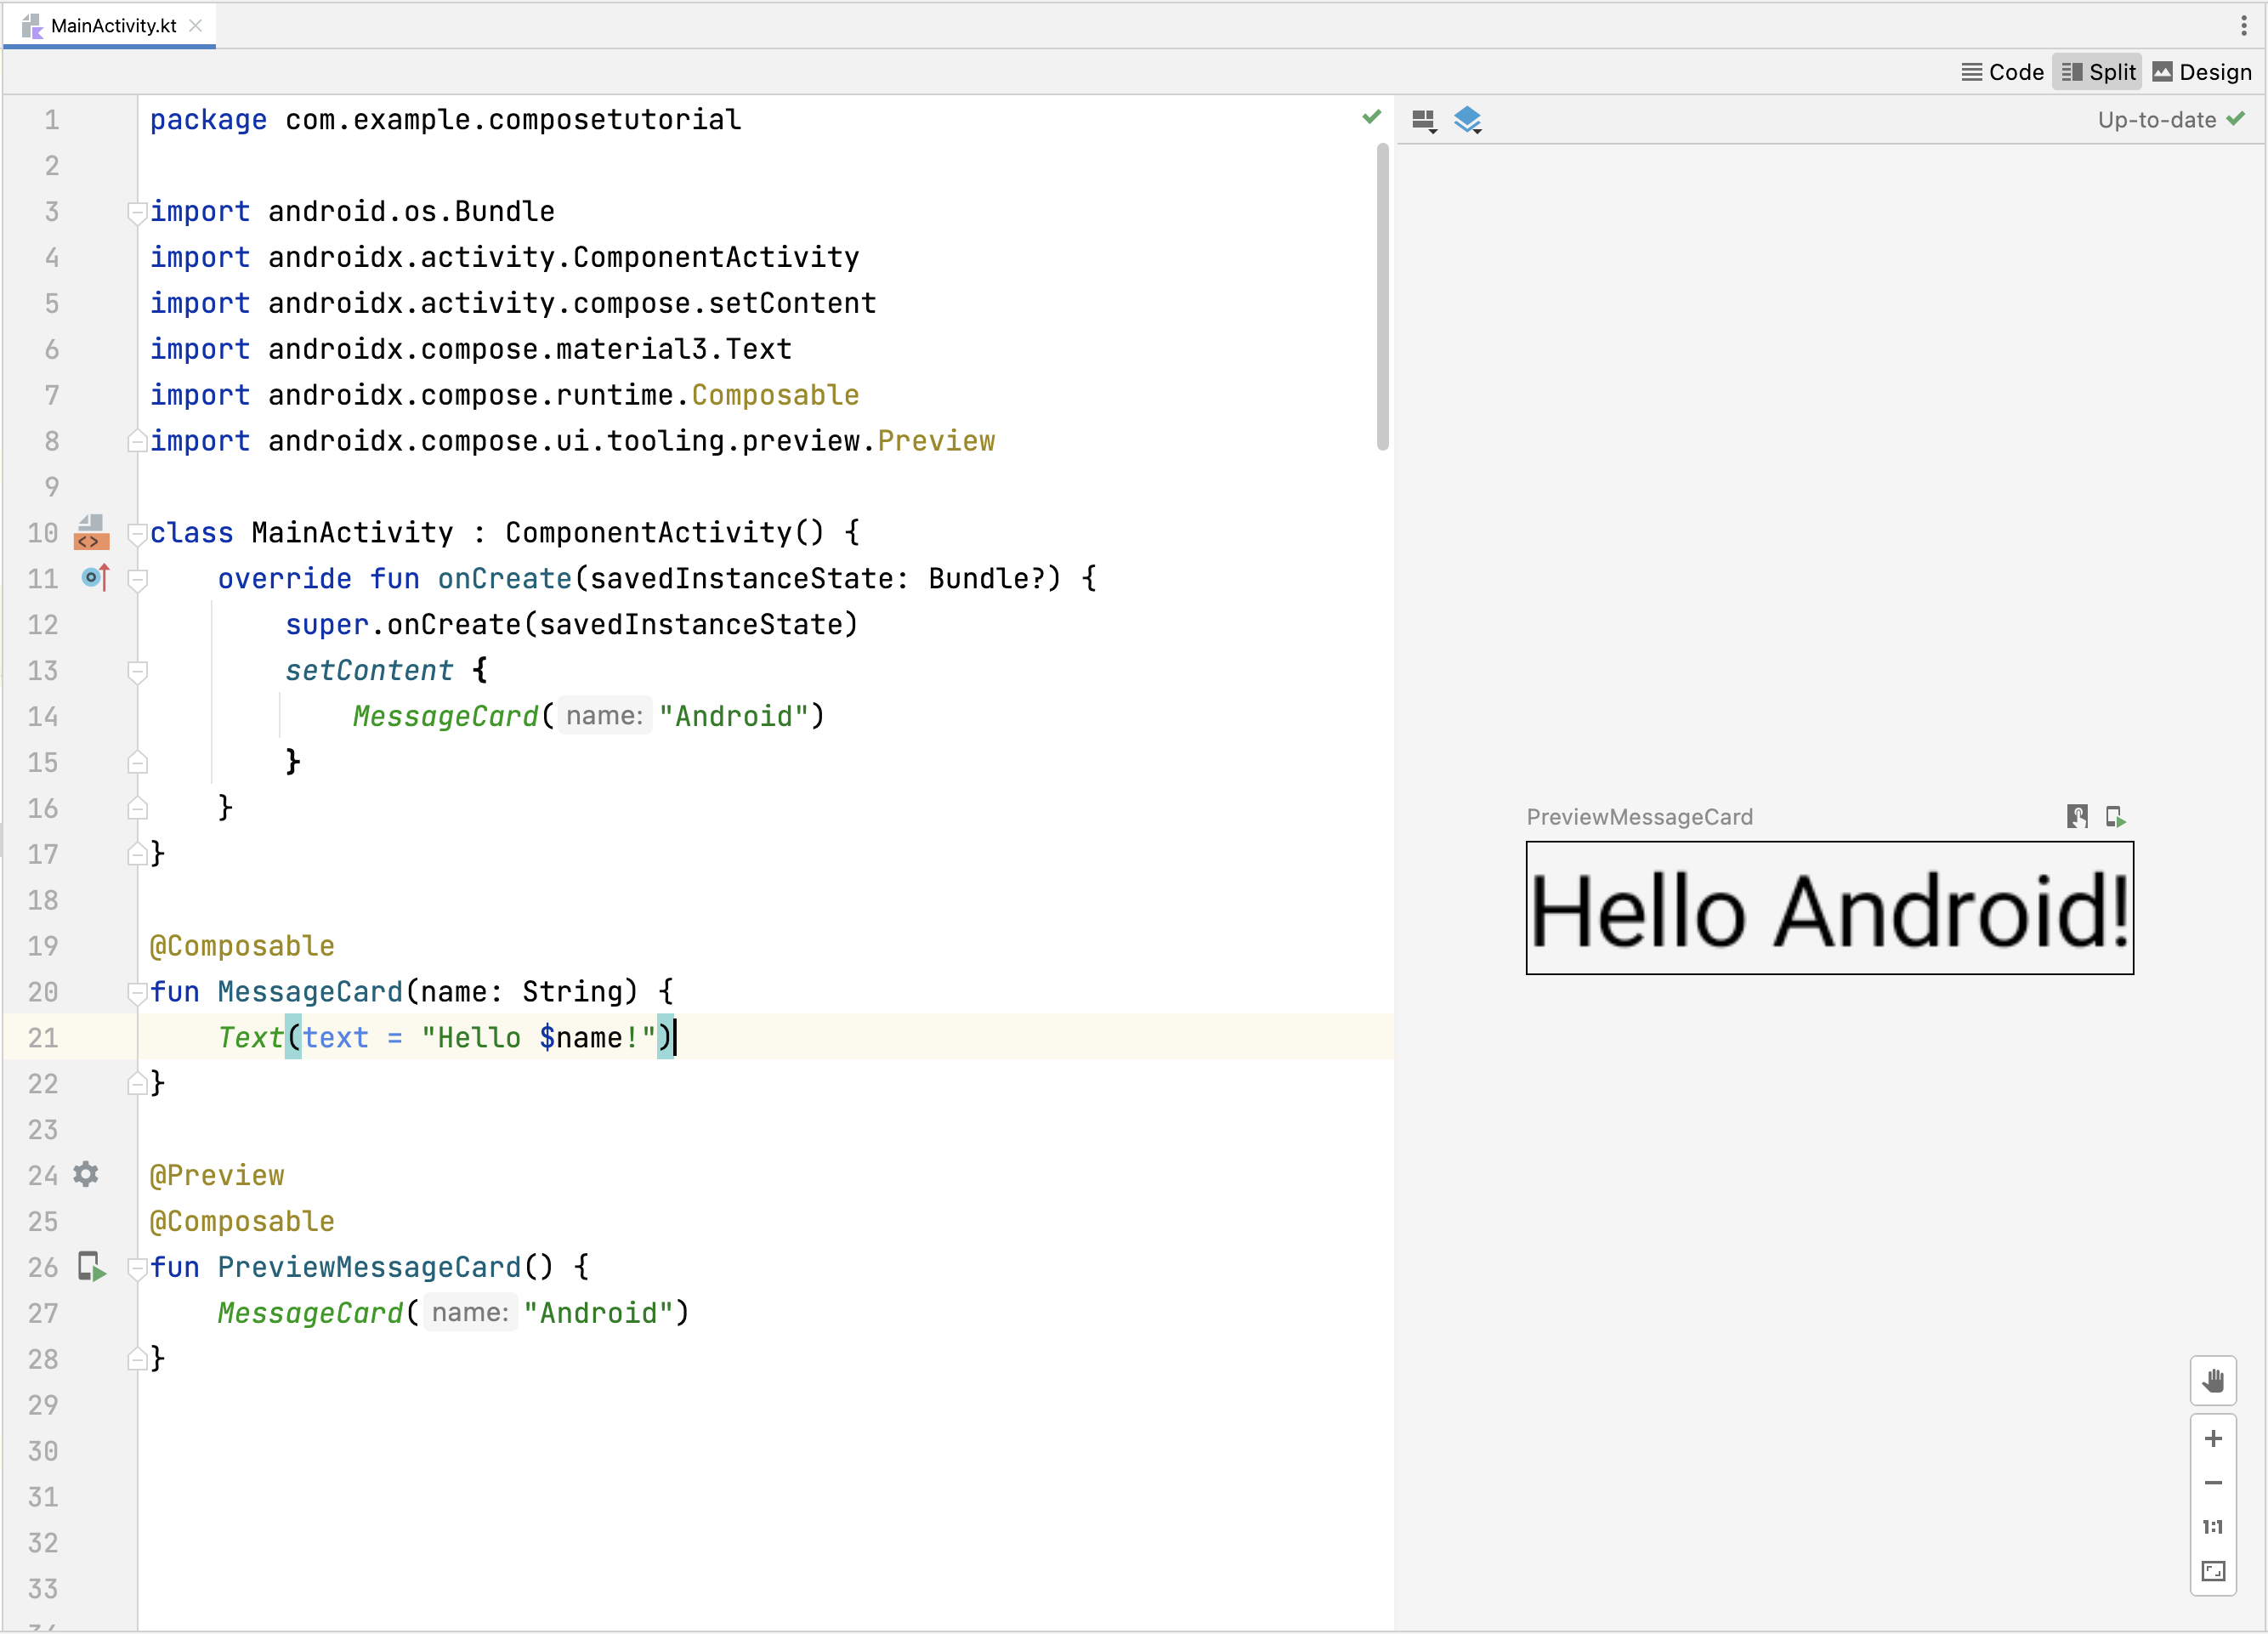 Vorschau einer zusammensetzbaren Funktion in Android Studio